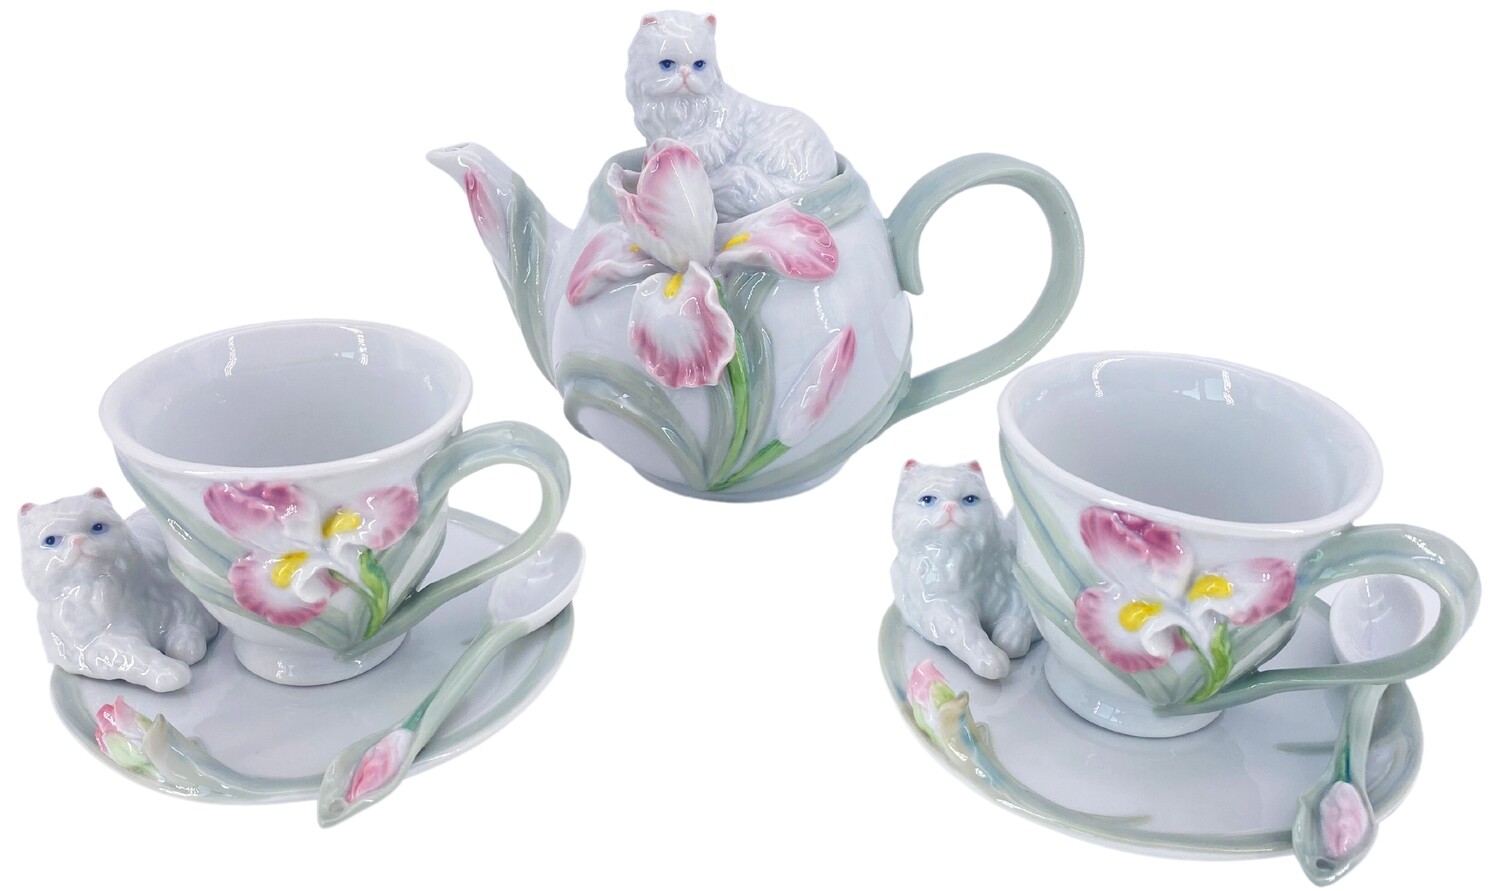 Genießen Sie Teezeit mit dem zauberhaften abc HOME Teeservice Katzen (7-teilig)!
Niedliche Katzenmotive: Das Teeservice begeistert mit verspielten Katzenmotiven auf hochwertigem Porzellan, das für eine gemütliche Teestunde sorgt.
Umfangreiches Set: Das Set enthält eine Teekanne (12 cm T x 20 cm B x 15 cm H), zwei Tassen (9 cm T x 11 cm B x 7 cm H) mit passenden Untertassen (13 cm T x 13 cm B x 5 cm H) sowie zwei Löffel (3 cm B x 11 cm L).
Perfektes Geschenk: Das Teeservice eignet sich hervorragend als Geschenk für Katzenliebhaber und Teeliebhaber.
Hochwertiges Porzellan: Das robuste Porzellan ist spülmaschinen- und mikrowellengeeignet.
Spezifikationen:
Marke: abc HOME
Material: Porzellan
Farbe: Weiß mit Katzenmotiven
Set-Inhalt: Teekanne, 2 Tassen, 2 Untertassen, 2 Löffel
Maße Teekanne: 12 cm T x 20 cm B x 15 cm H
Maße Tassen: 9 cm T x 11 cm B x 7 cm H
Maße Untertassen: 13 cm T x 13 cm B x 5 cm H
Maße Löffel: 3 cm B x 11 cm L
Keywords: Teeservice Katzen, Porzellan, abc HOME, Katze, Katzenmotiv, Tee, Teekanne, Tasse, Untertasse, Löffel, Geschenk, niedlich, verspielt, hochwertig, spülmaschinenfest, mikrowellengeeignet